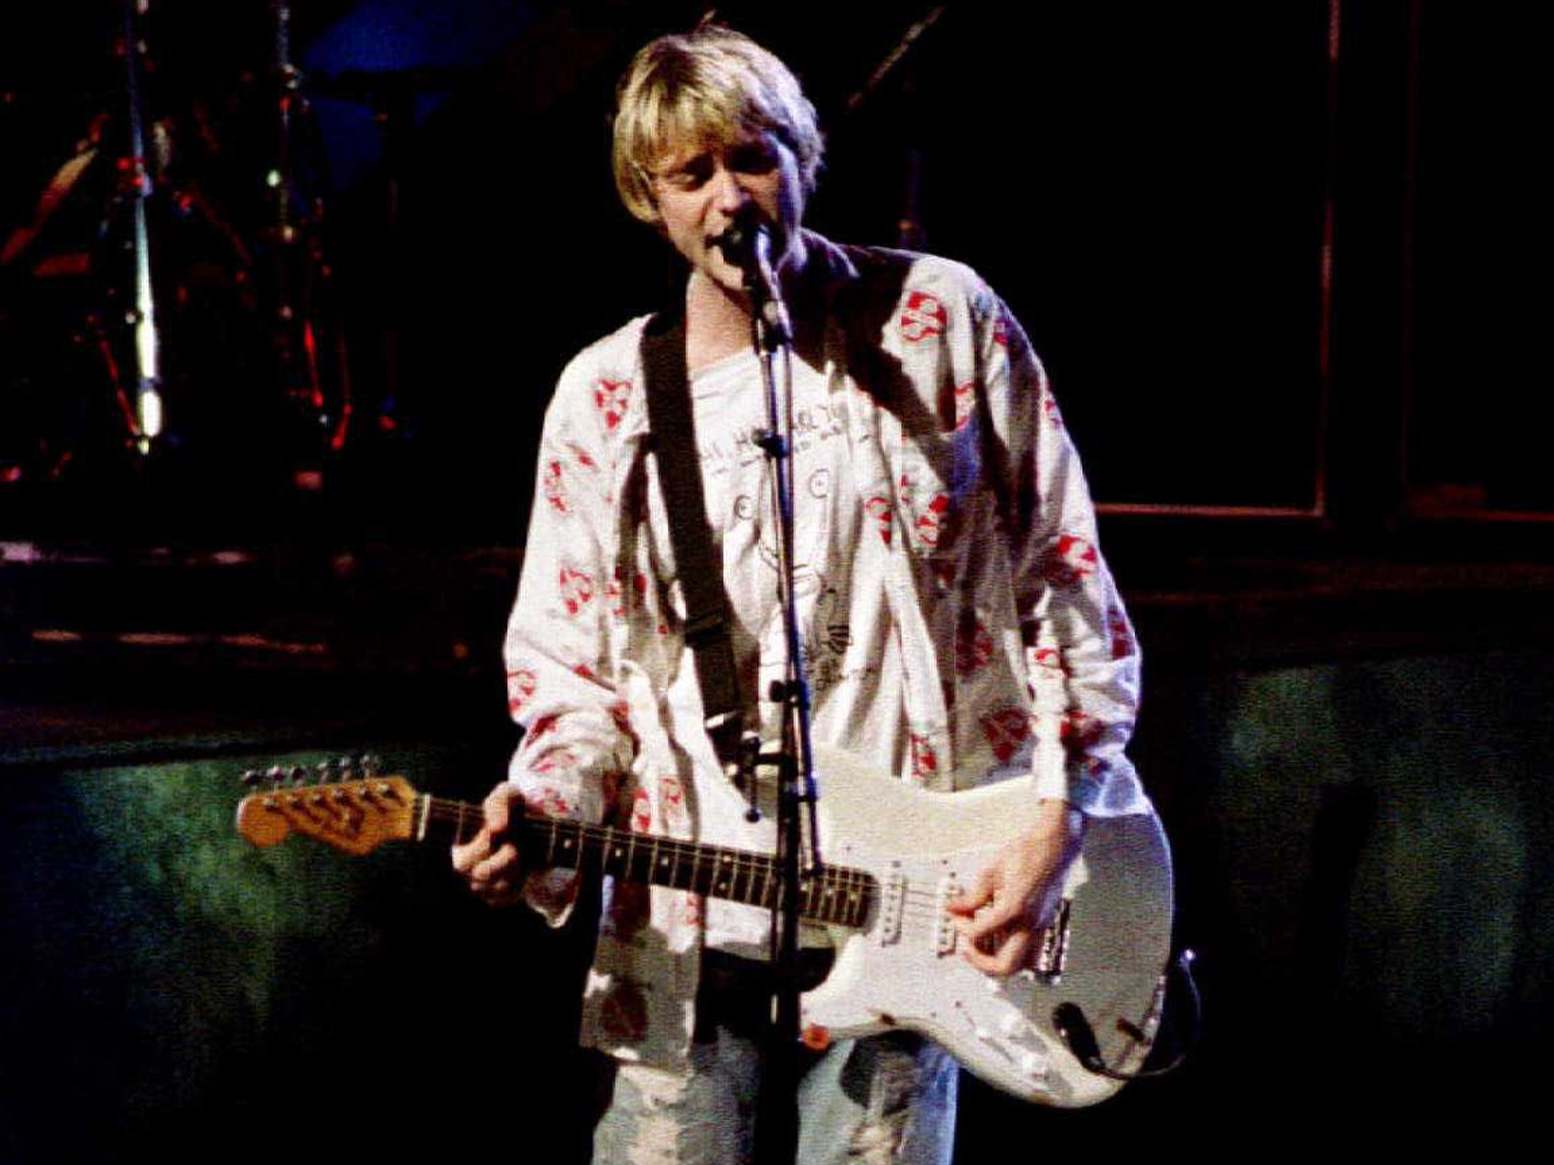 Kurt Cobain performing during the 1992 MTV Music Awards